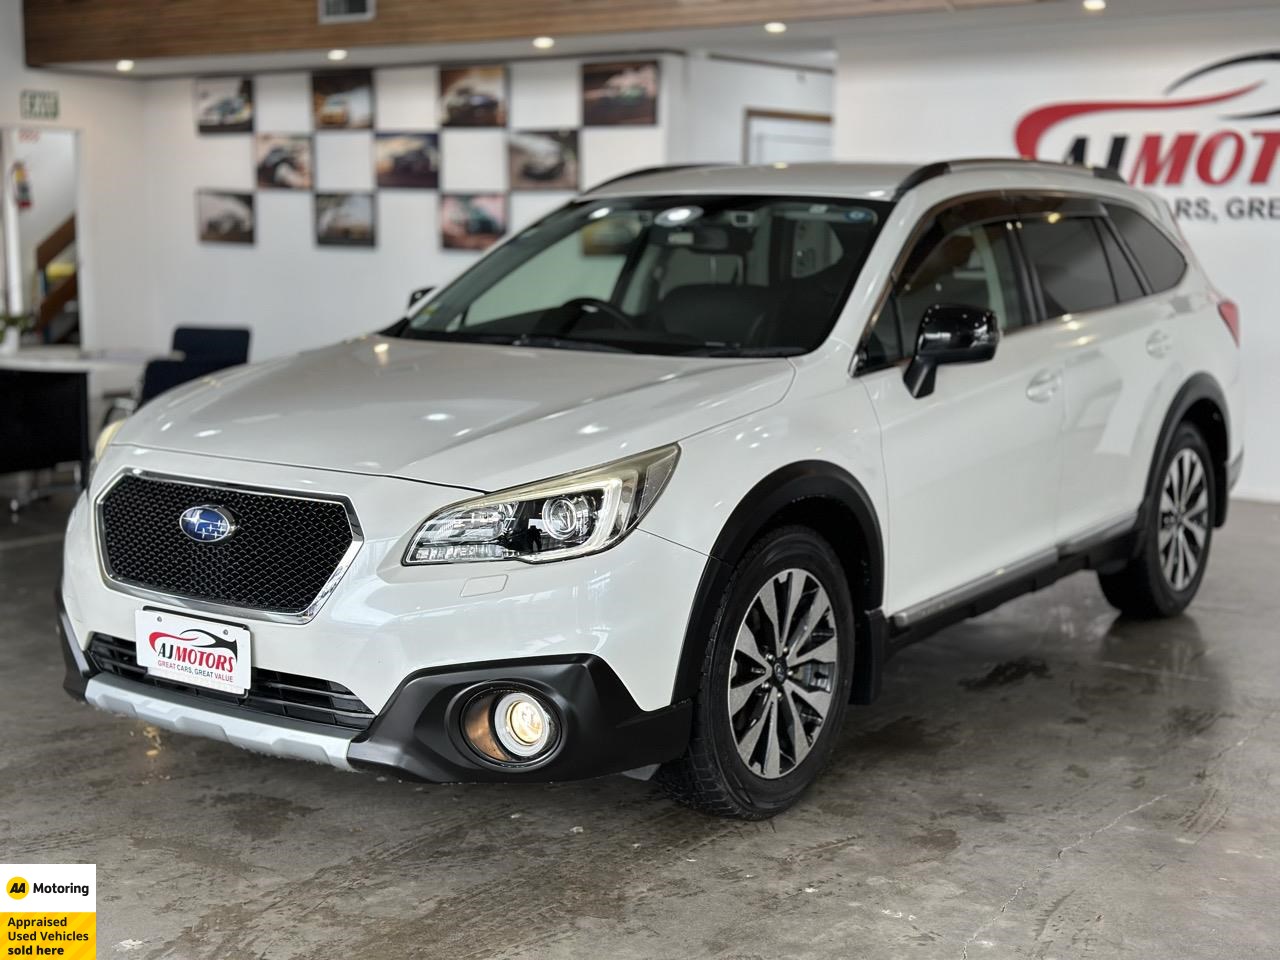 2014 Subaru Outback